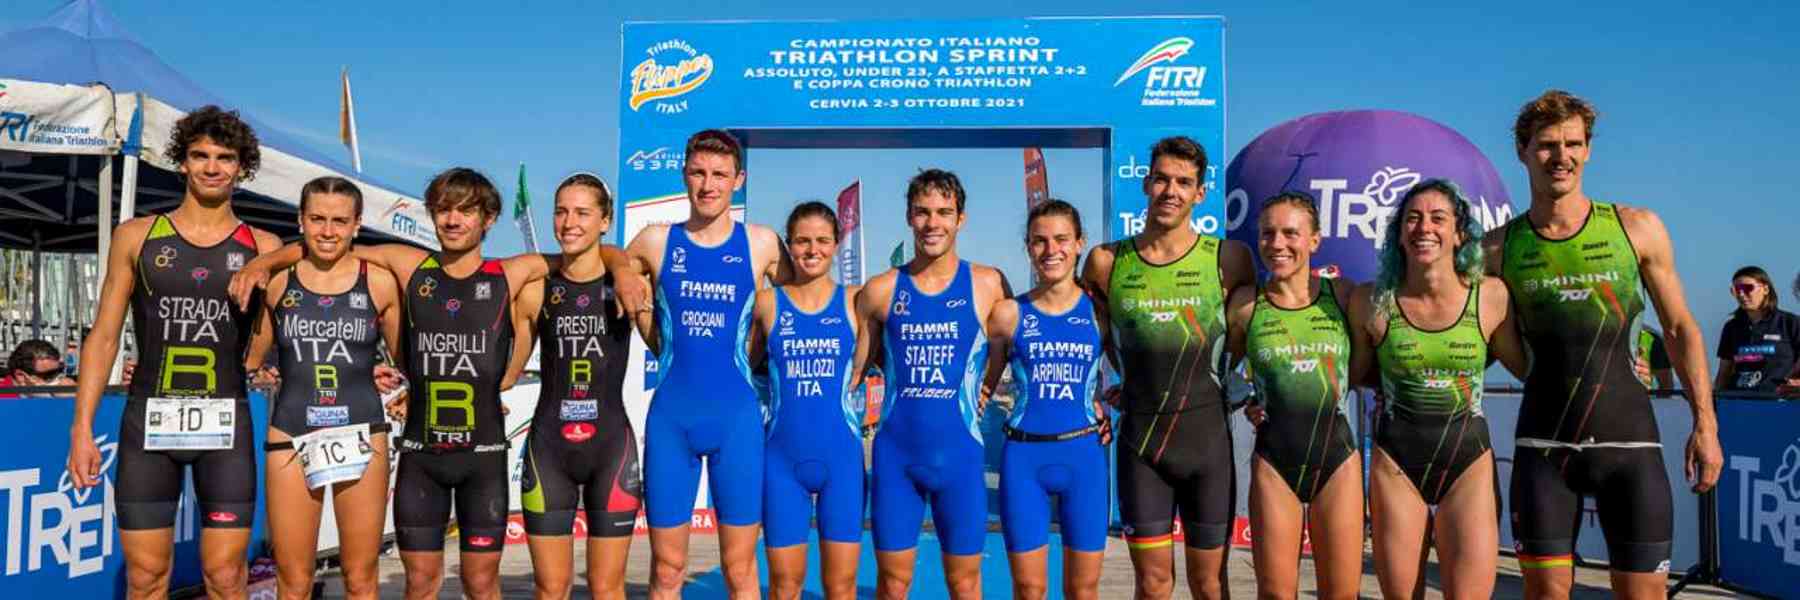 Campionato Italiano Triathlon Staffetta 2+2 e Coppa Crono